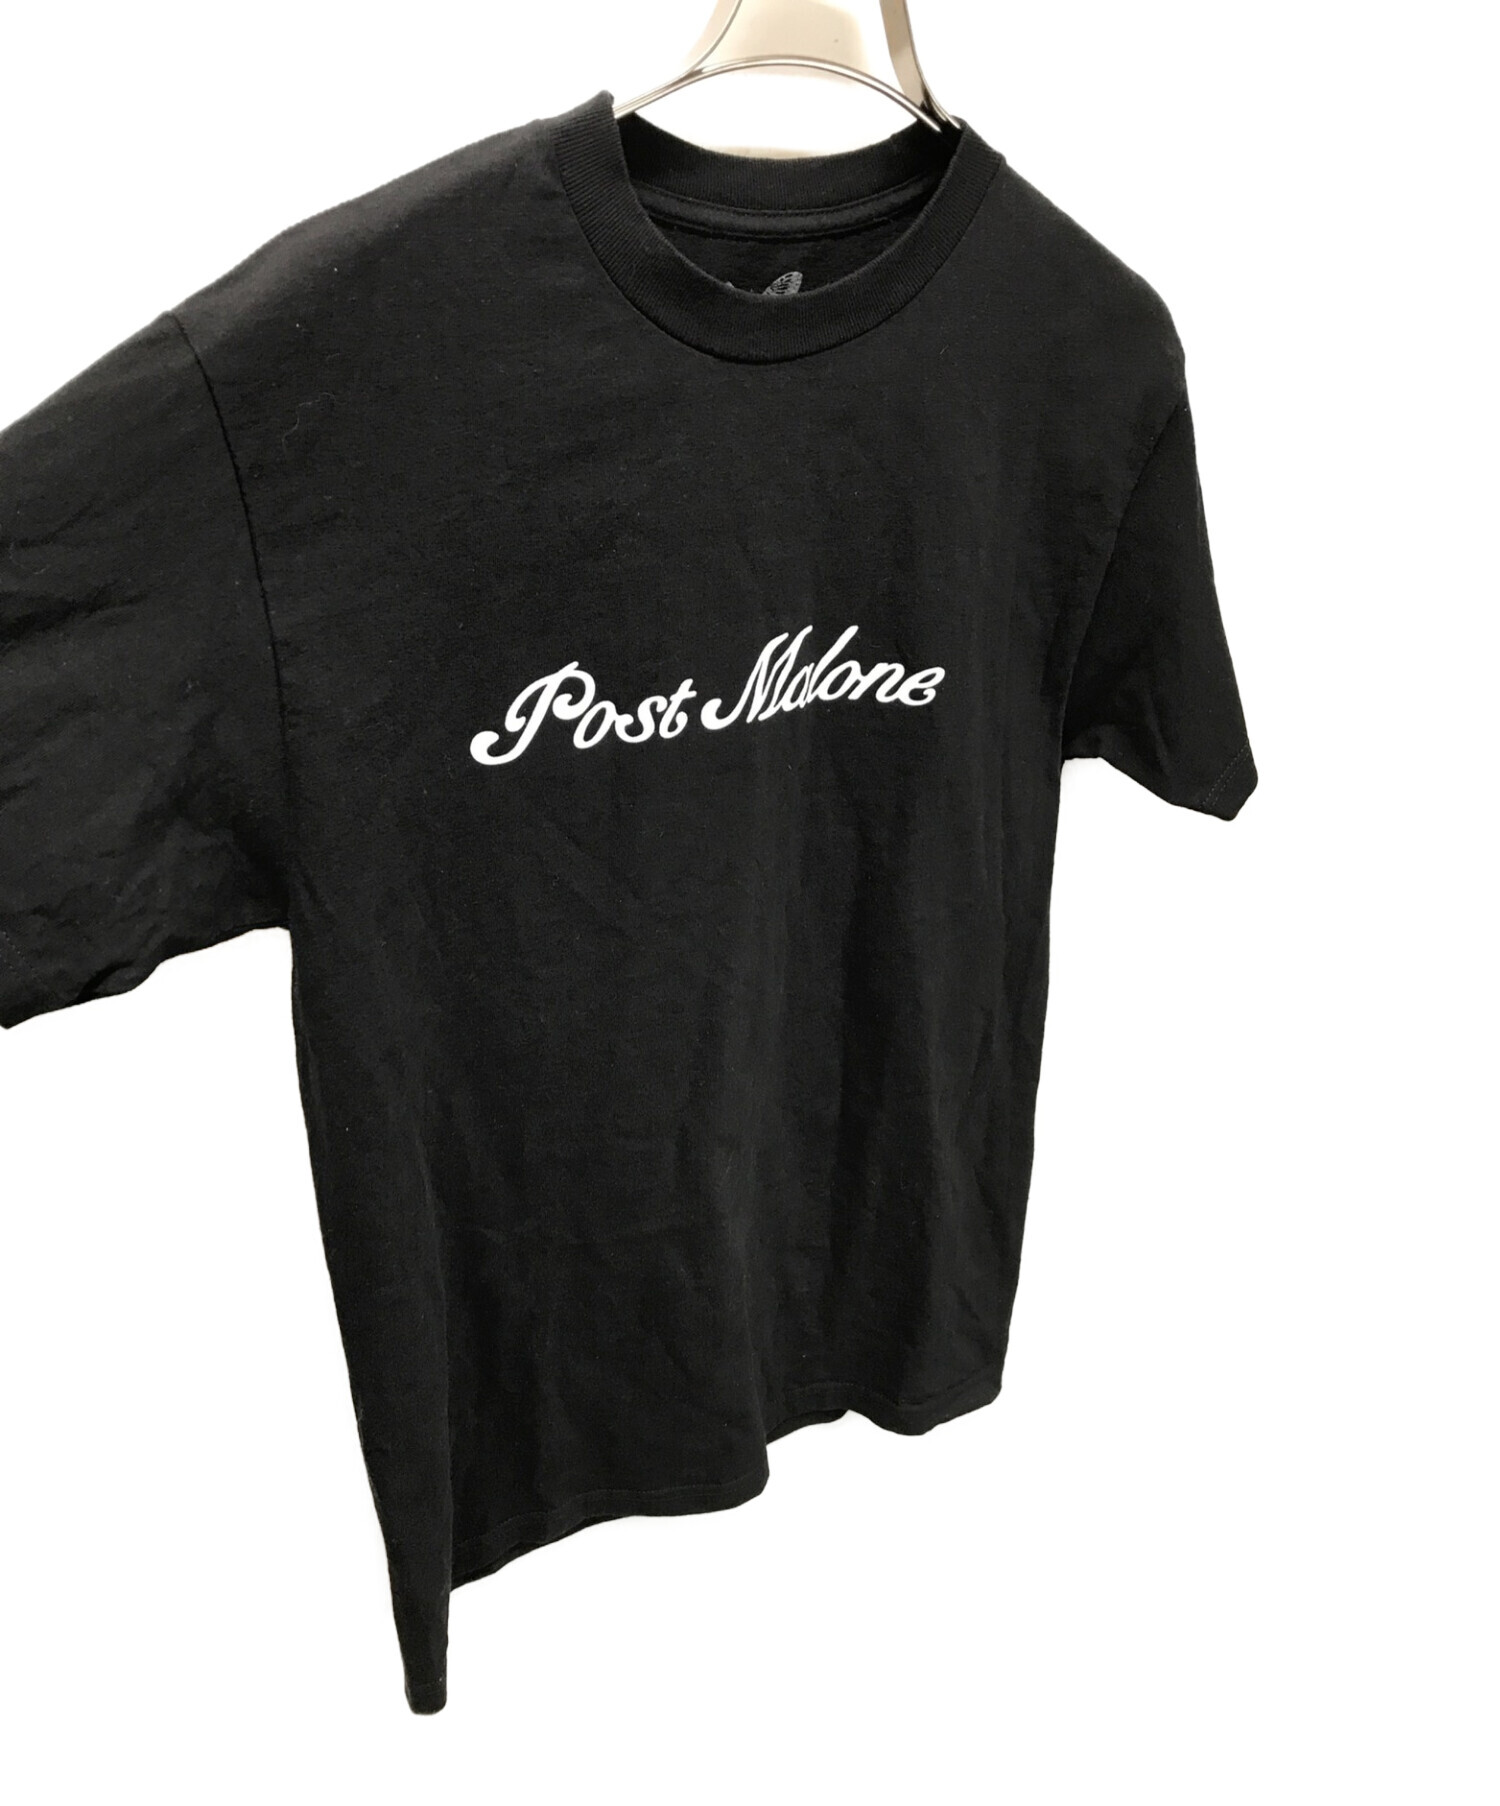 POST MALONE × VERDY (ポスト・マローン×ヴェルディ) アーティストコラボプリントTシャツ ブラック サイズ:M